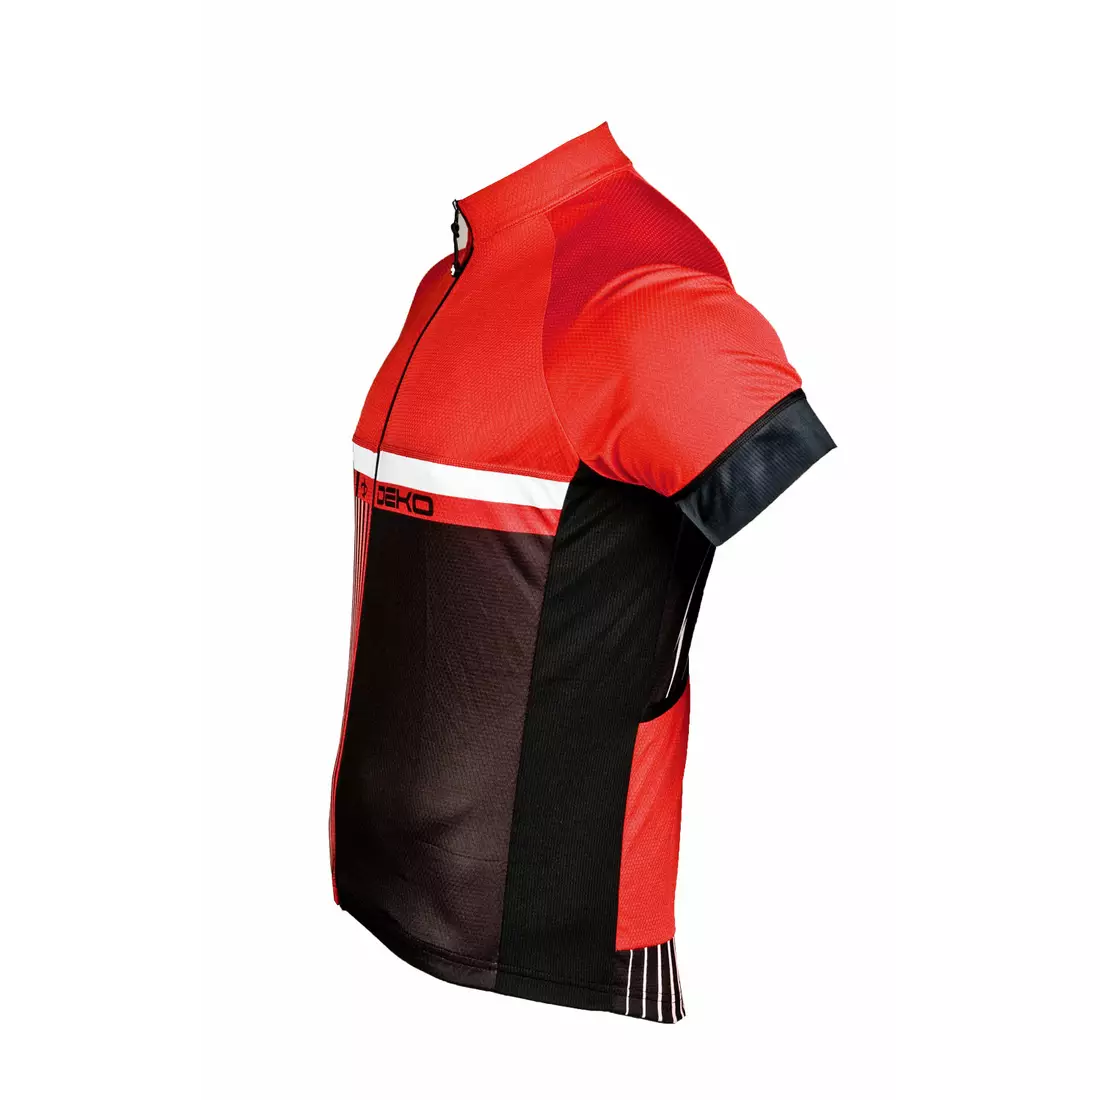 DEKO STYLE men's cycling jersey, black-red